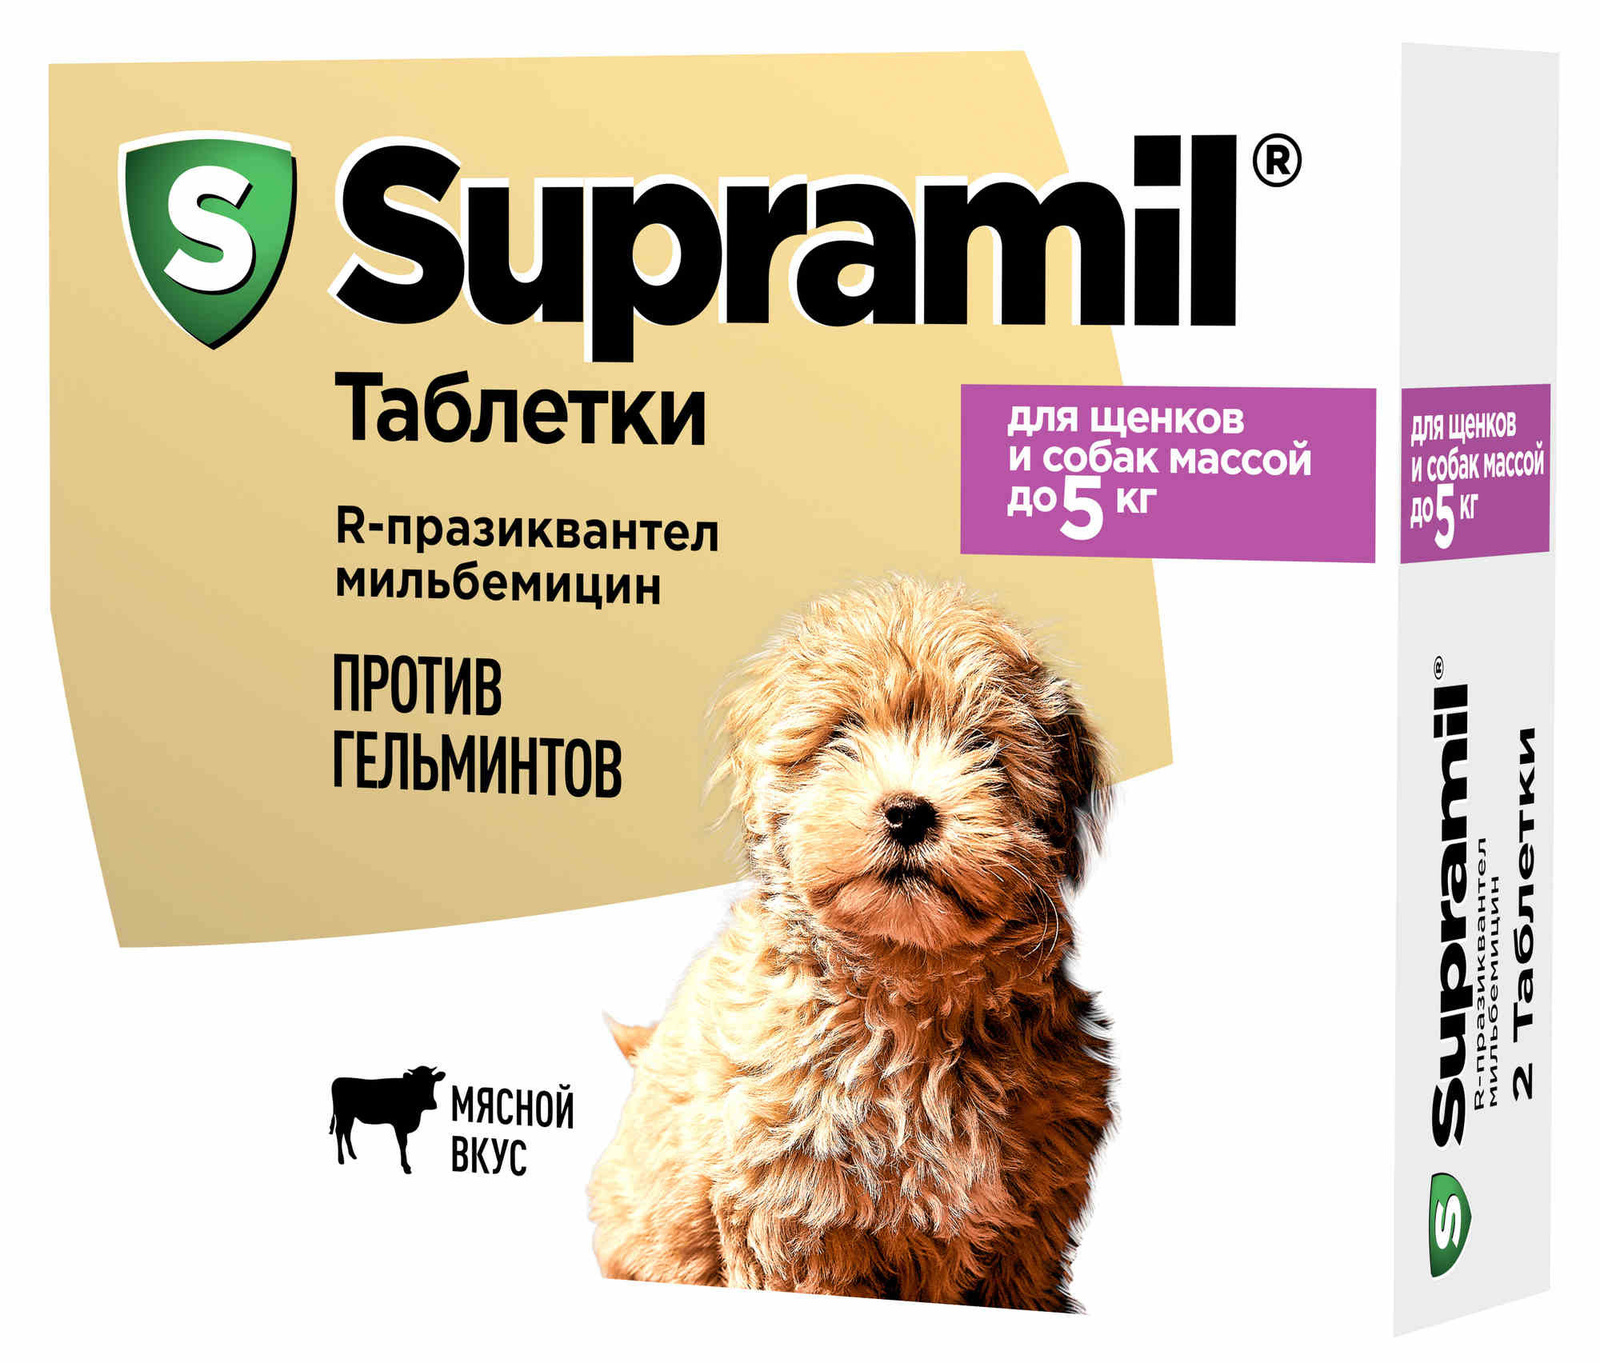 Астрафарм Астрафарм антигельминтный препарат Supramil для щенков и собак массой до 5 кг, таблетки (20 г) астрафарм supramil таблетки для щенков и собак массой до 20 кг 2 таб